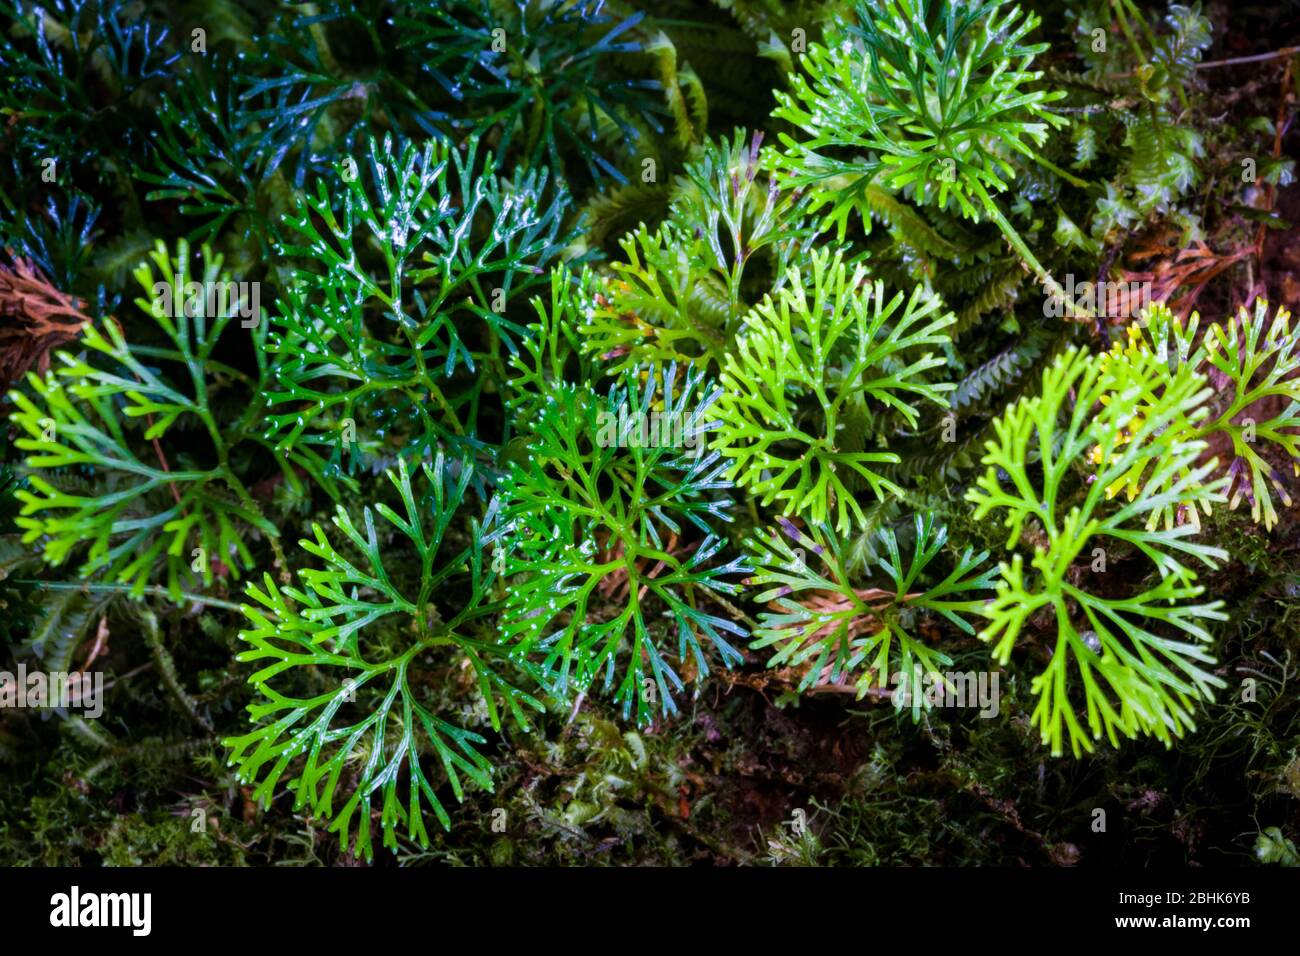 Plantes vertes au sol forestier dans la forêt de nuages du Parc National de la Amistad (PILA), province de Chiriqui, République du Panama. Banque D'Images